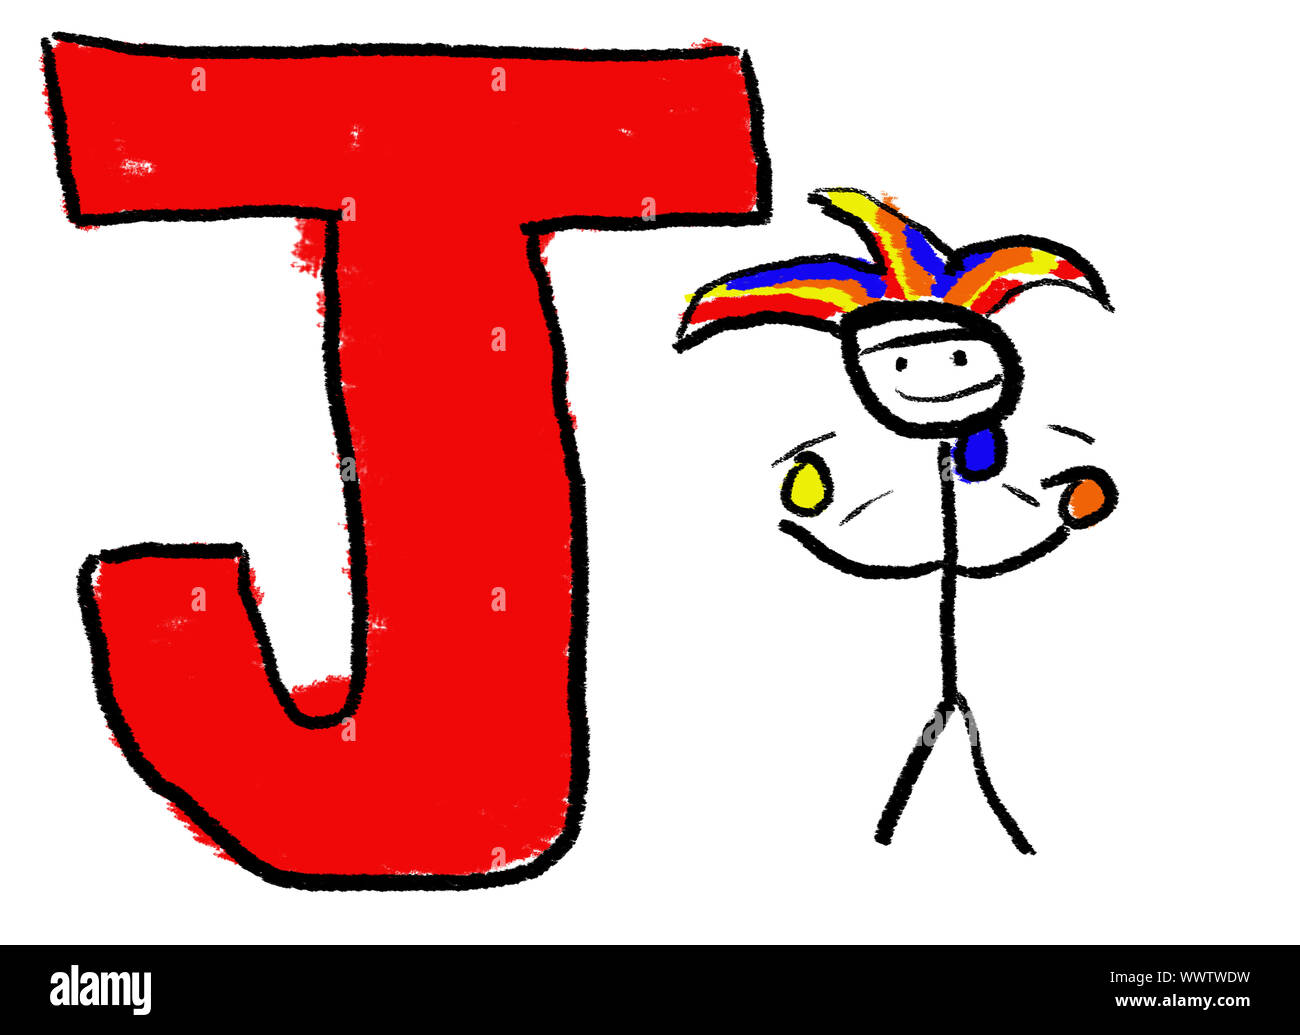 Eine kindliche Zeichnung der Buchstaben J, mit einem Stock Jester Jonglieren Stockfoto